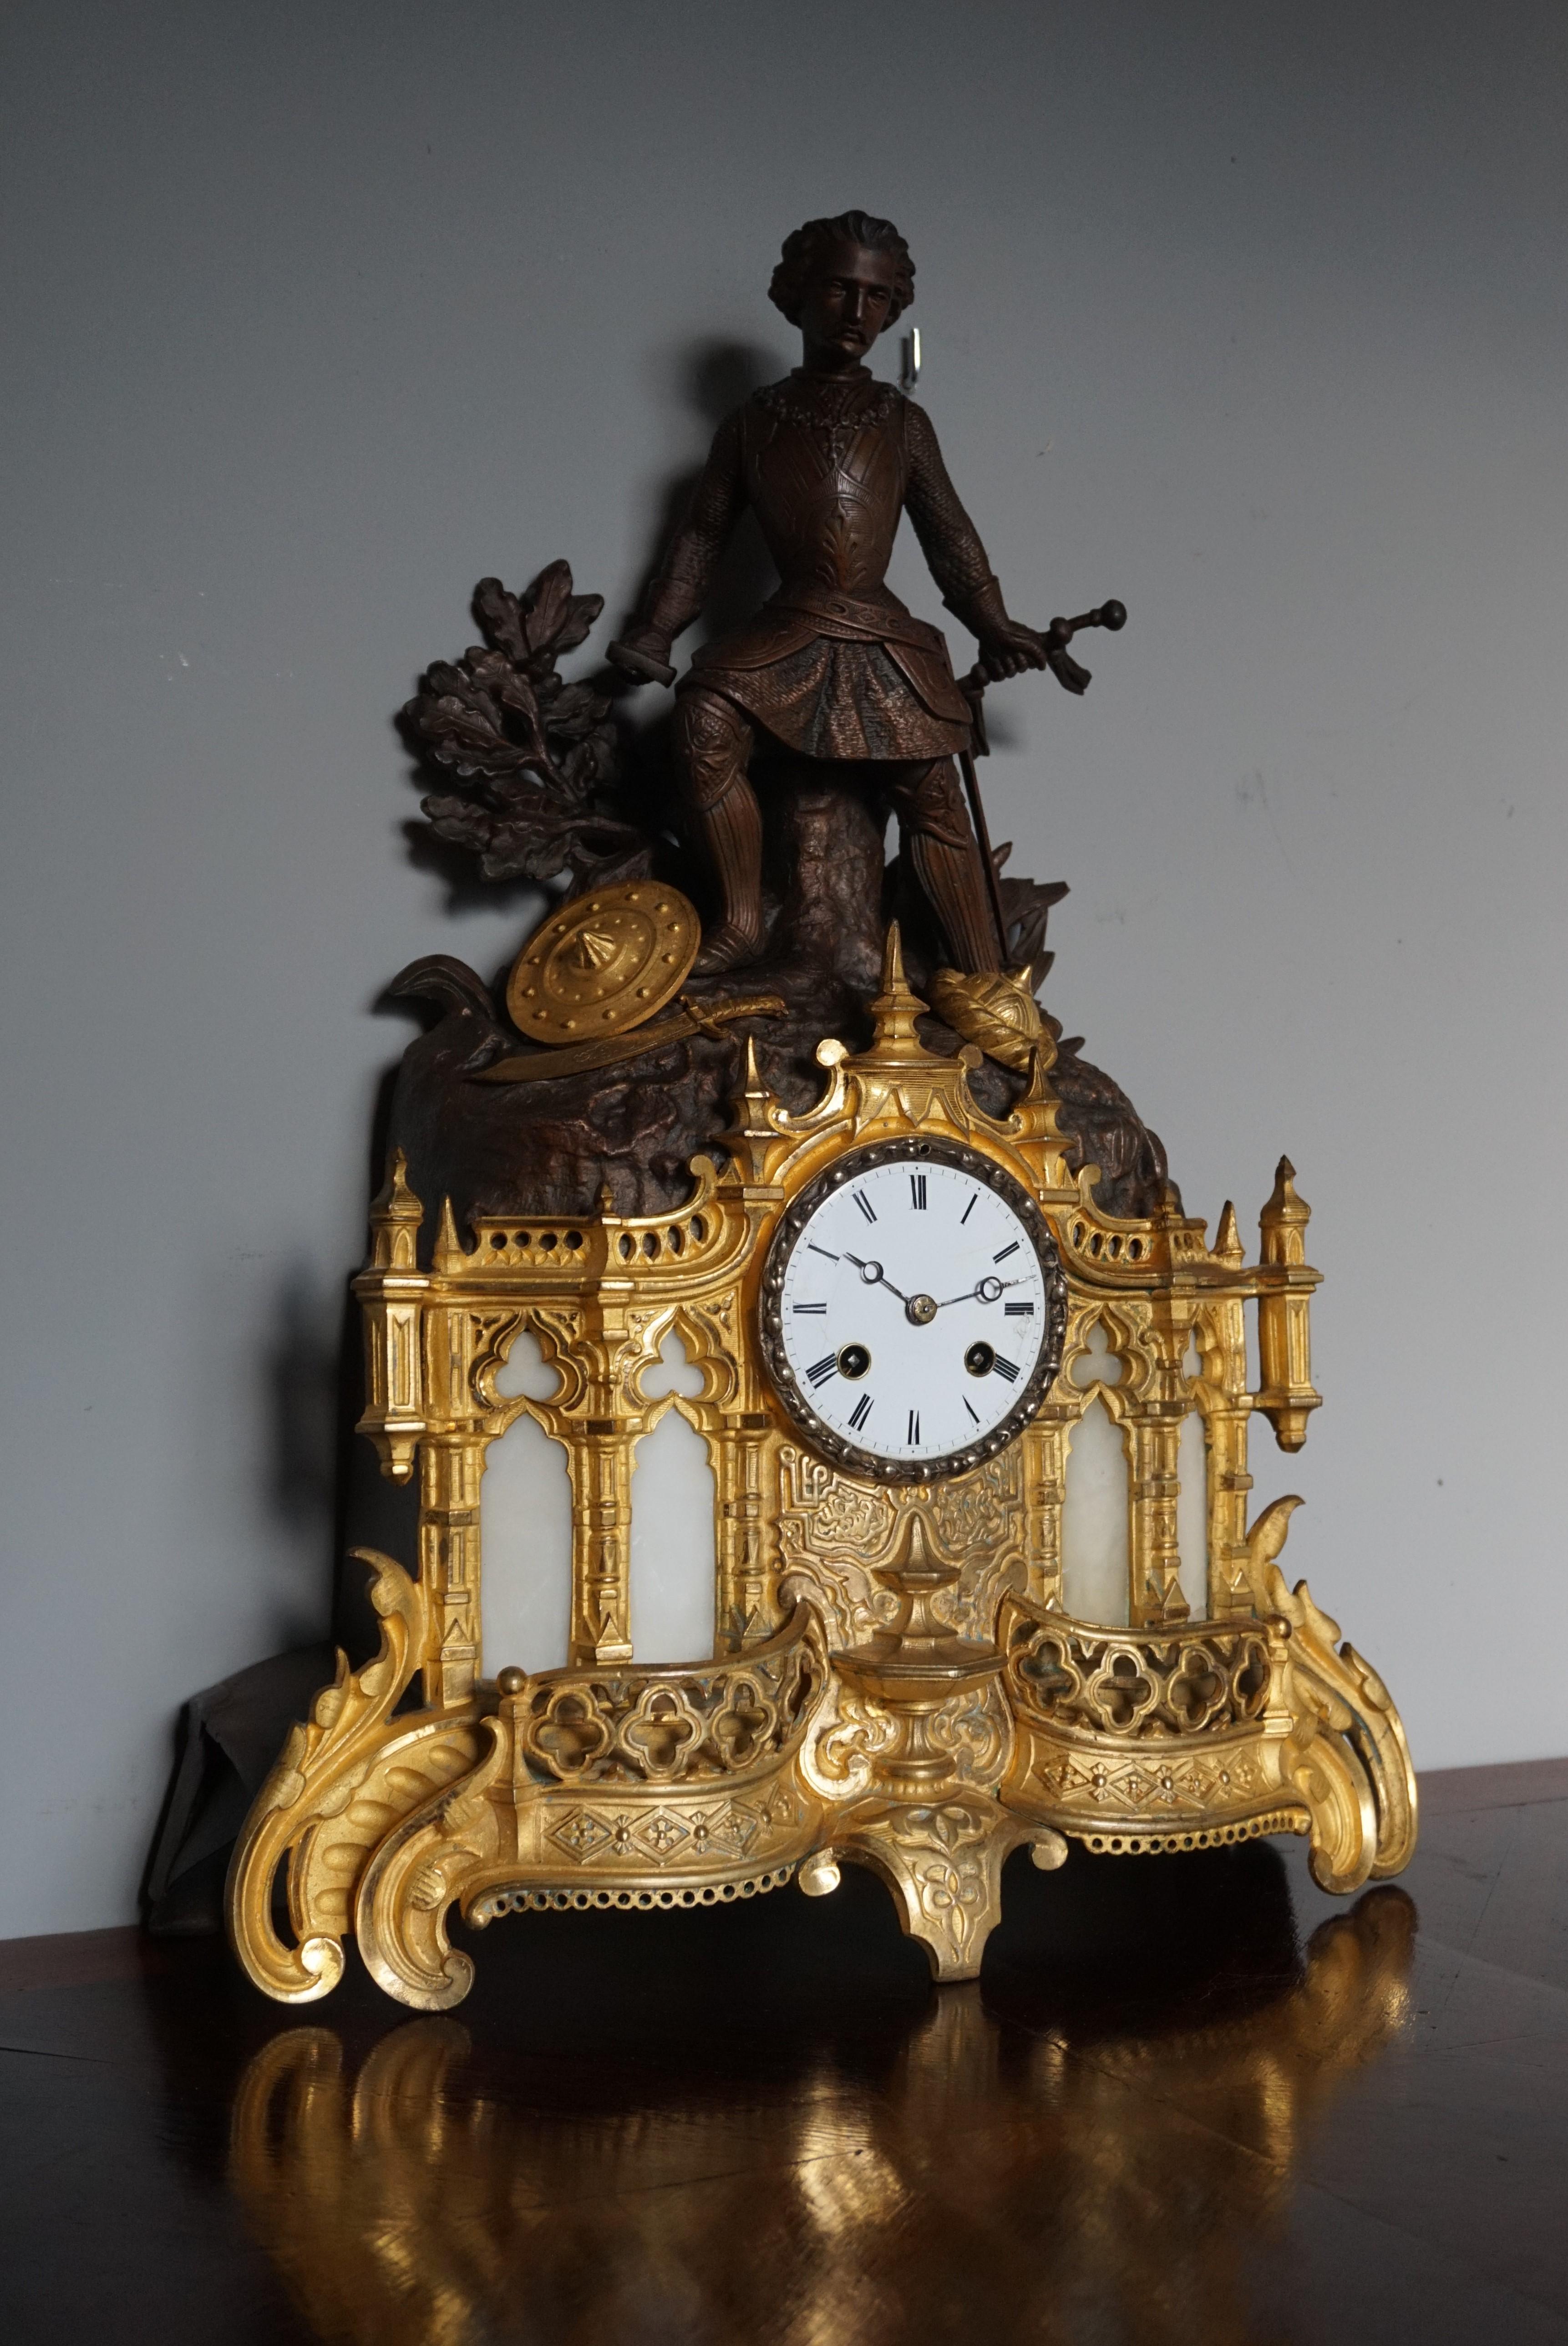 Kathedrale, skulpturale Uhr aus vergoldeter Bronze und Zink.

Diese große, handgefertigte, beeindruckende und aussagekräftige Uhr kommt mit einer Vielzahl von gotischen Kirchenelementen. Tatsächlich ähnelt die untere Hälfte dieser Manteluhr sehr